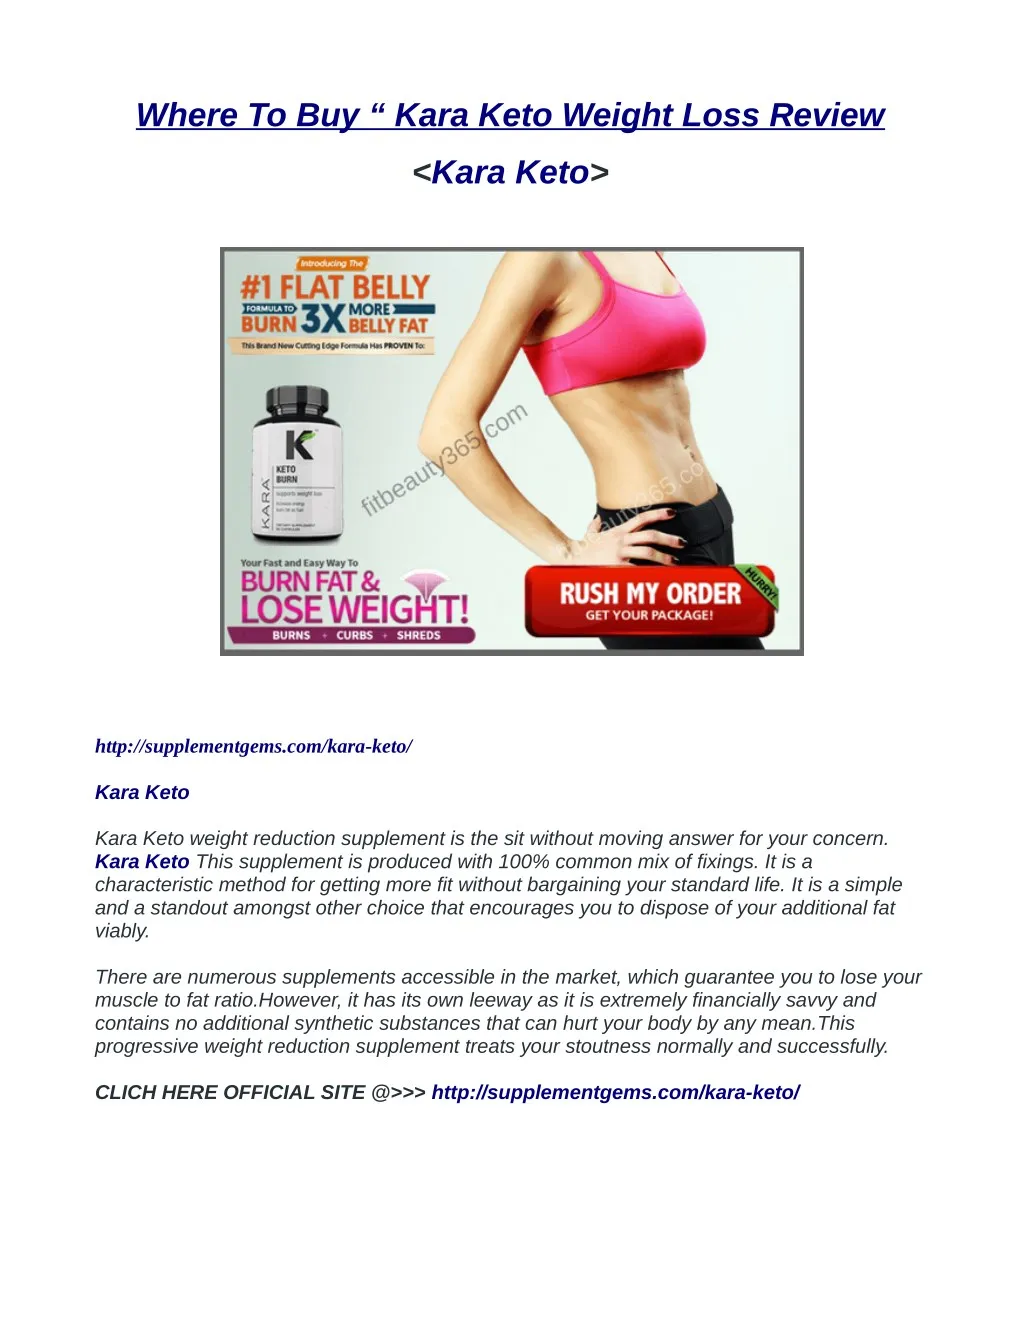 where to buy kara keto weight loss review